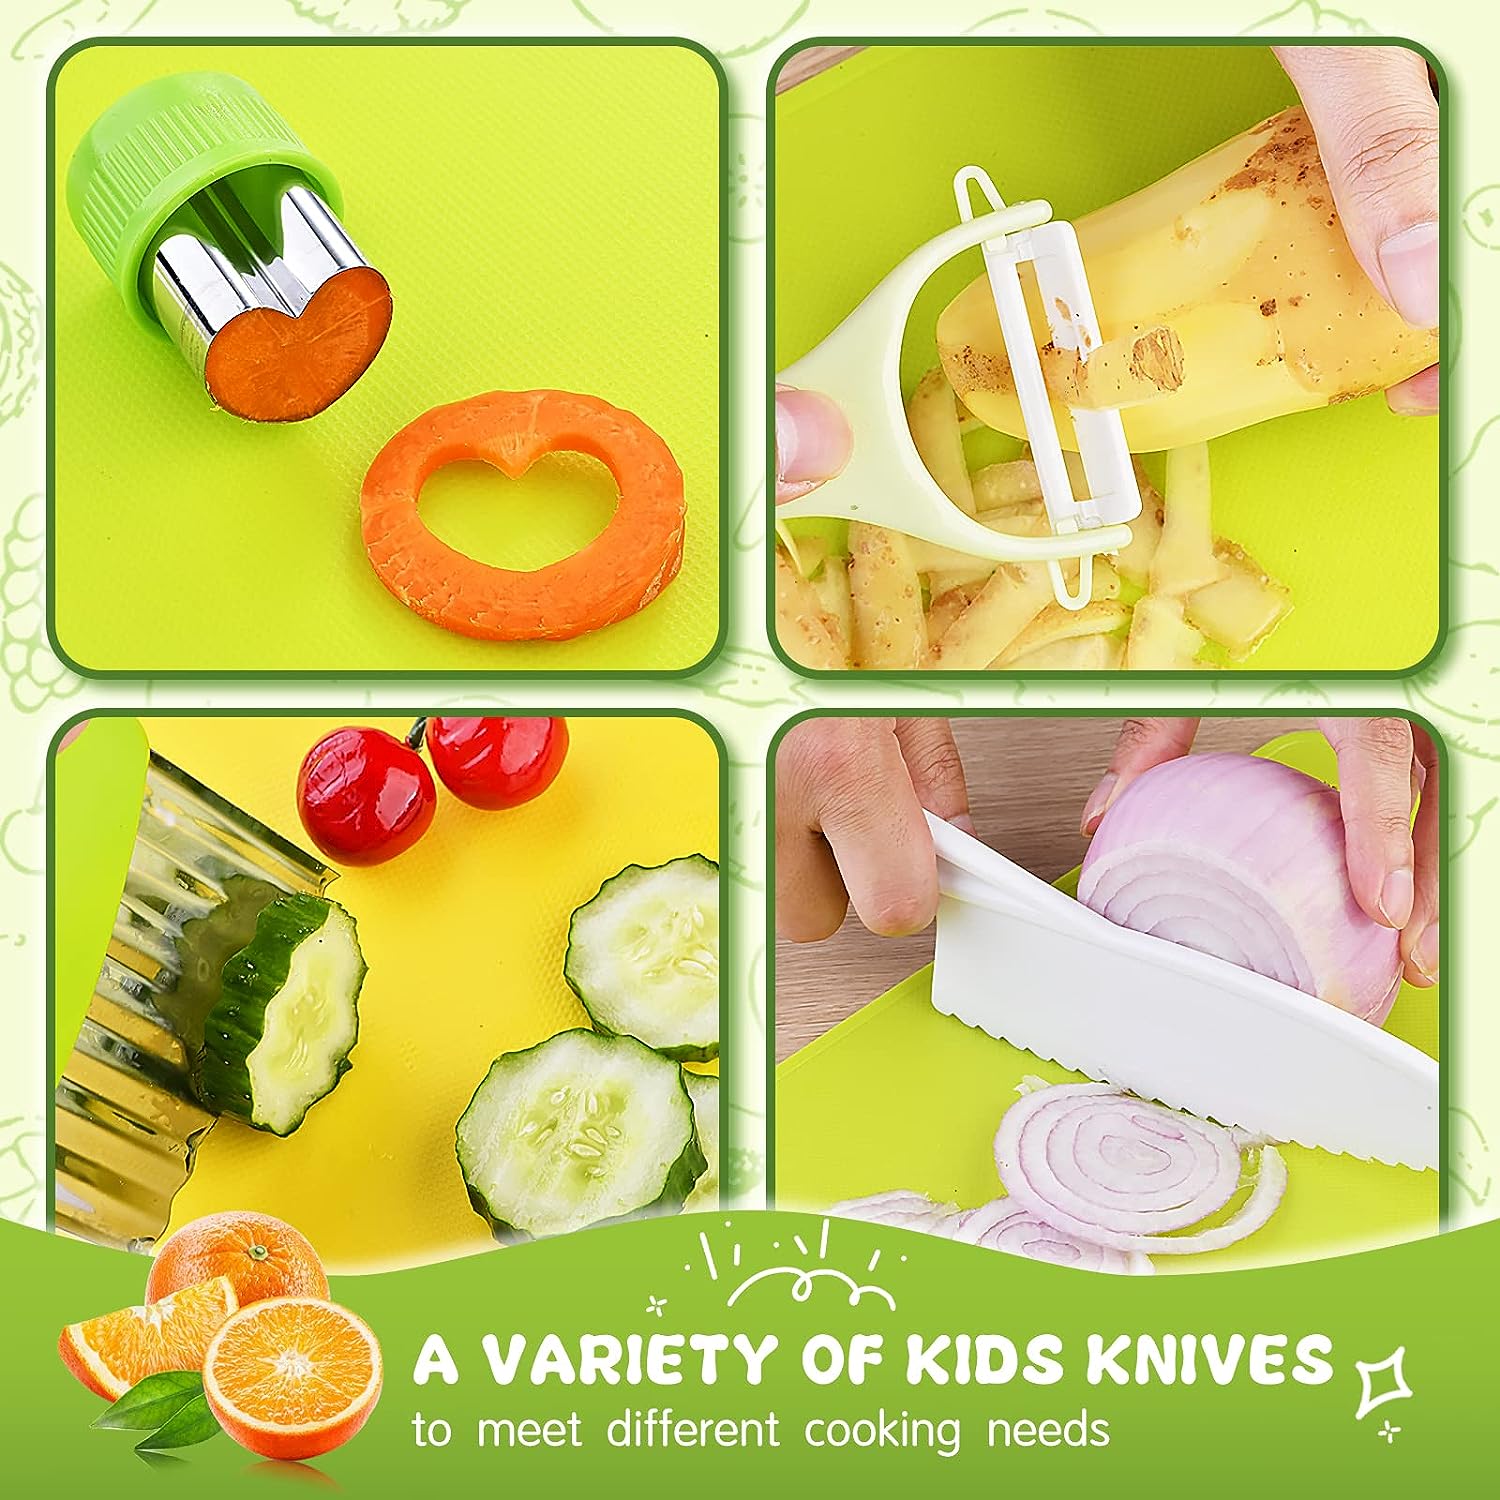 Mon premier couteau de cuisine (bois) – apprentissage Montessori